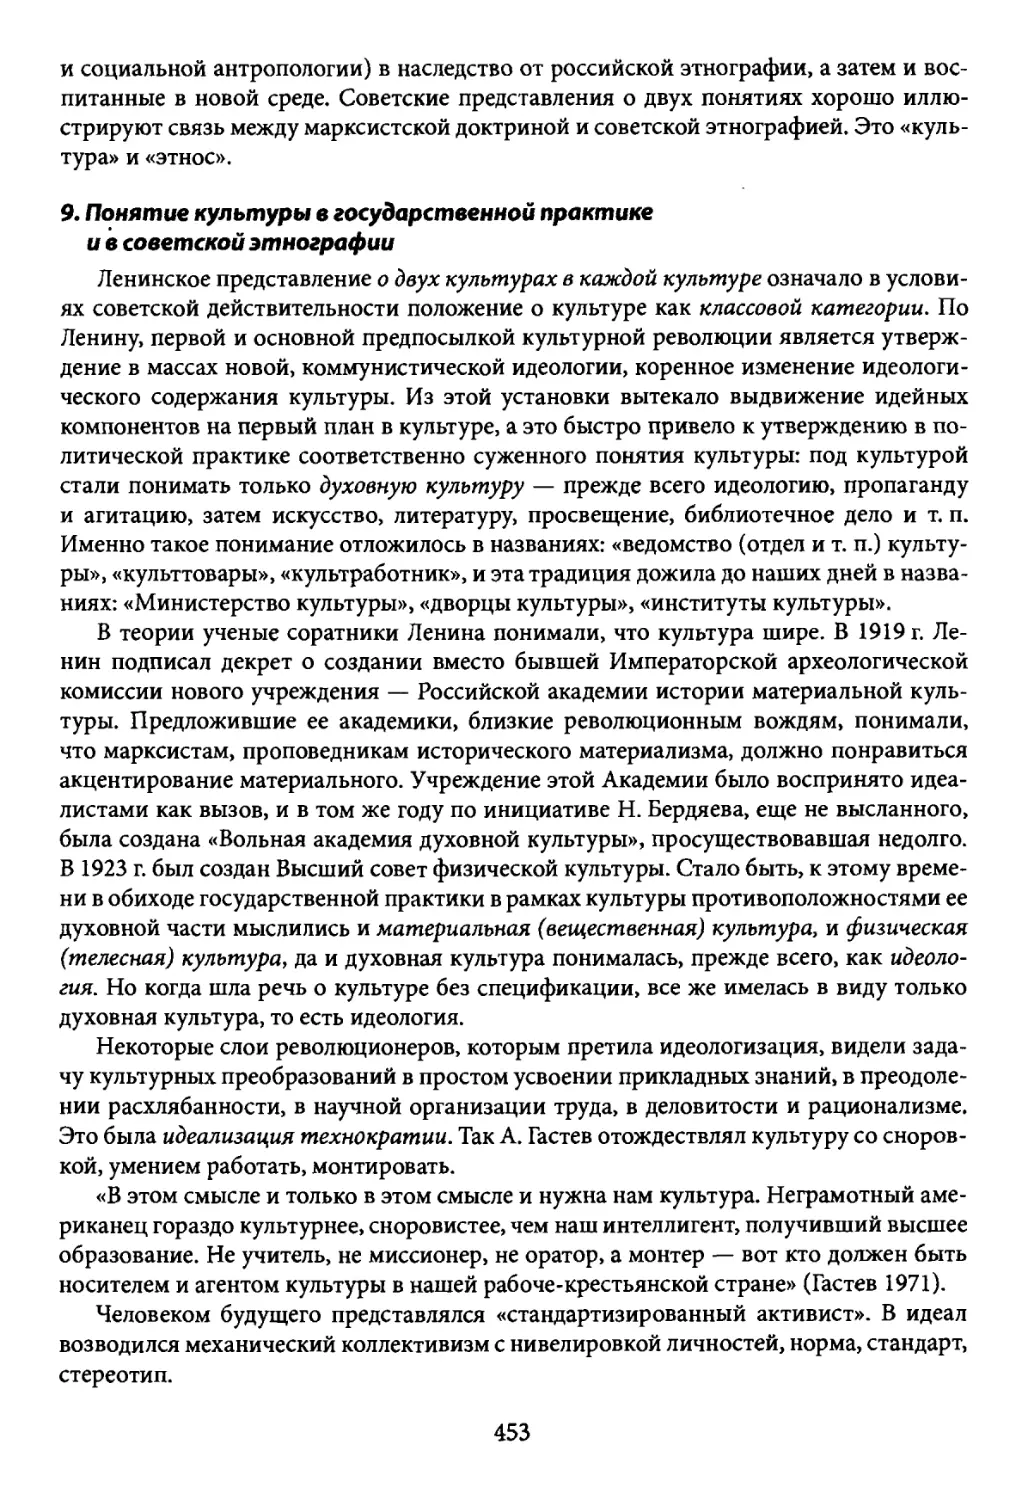 9. Понятие культуры в государственной практике и в советской этнографии